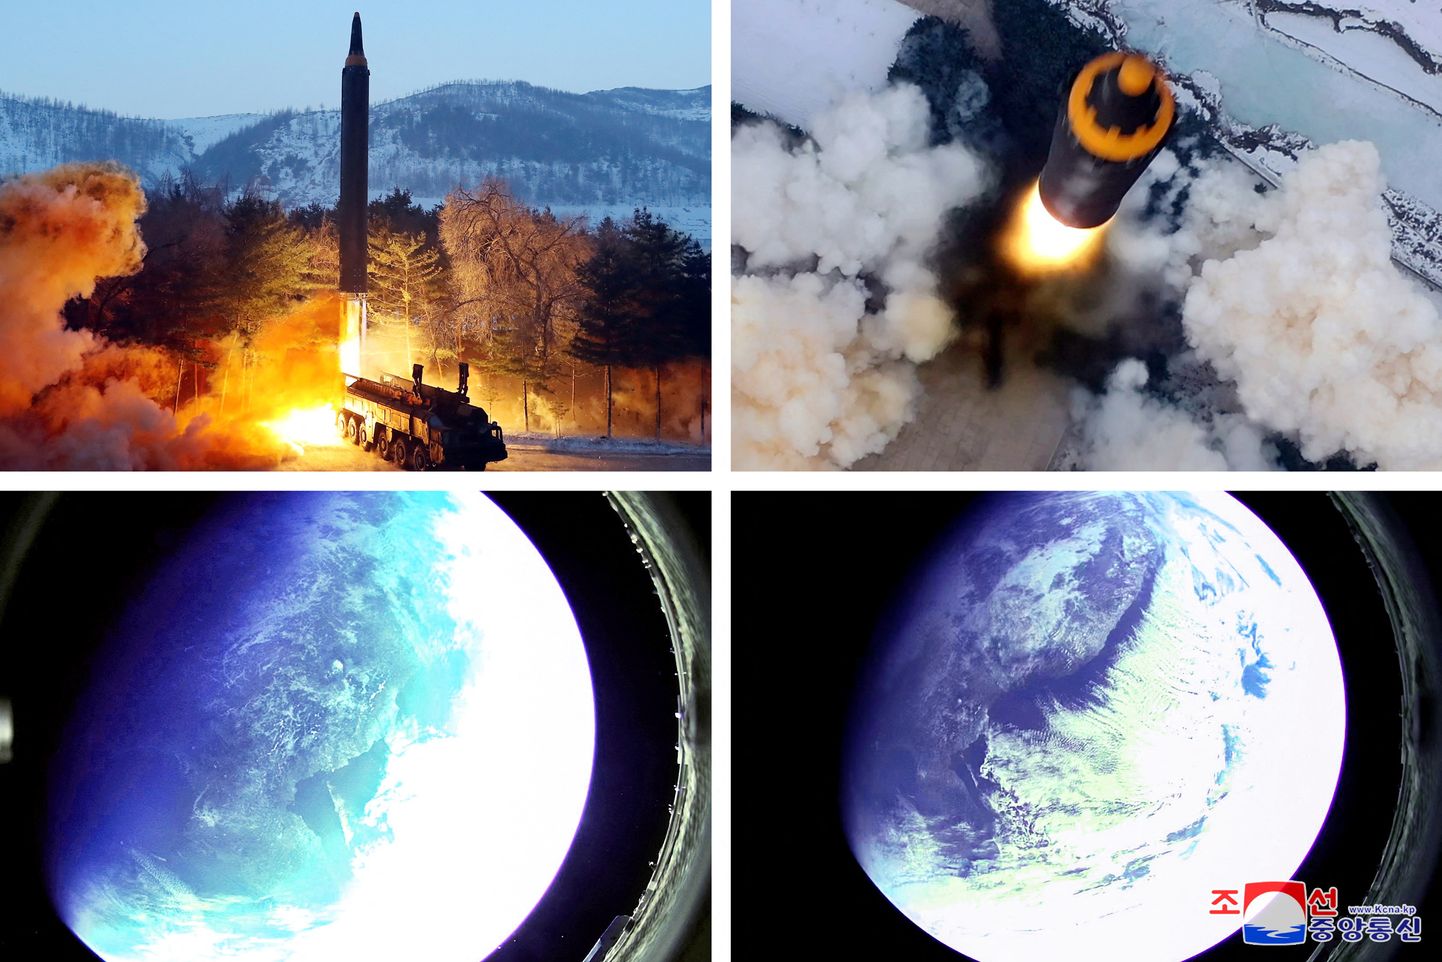 Põhja-Korea uudisteagentuuri KCNA avaldatud fotod keskmaa ballistilisest raketist Hwasong-12 ja raketilt tehtud fotod kosmosest